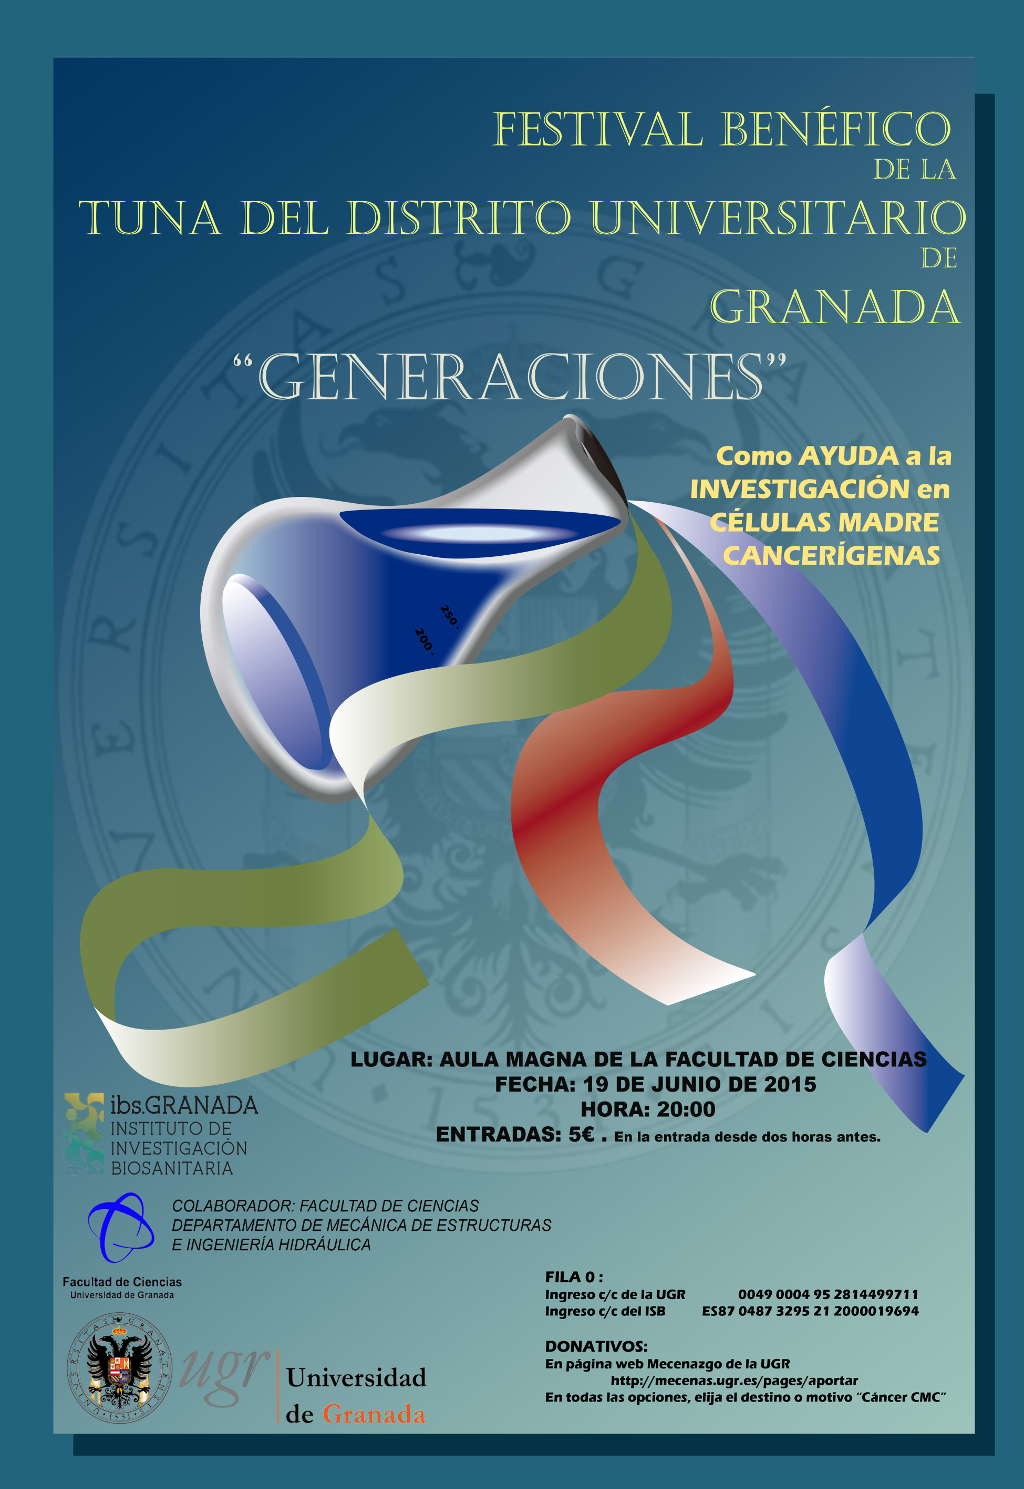 Festival Benéfico de la Tuna del Distrito Universitario de Granada "Generaciones"